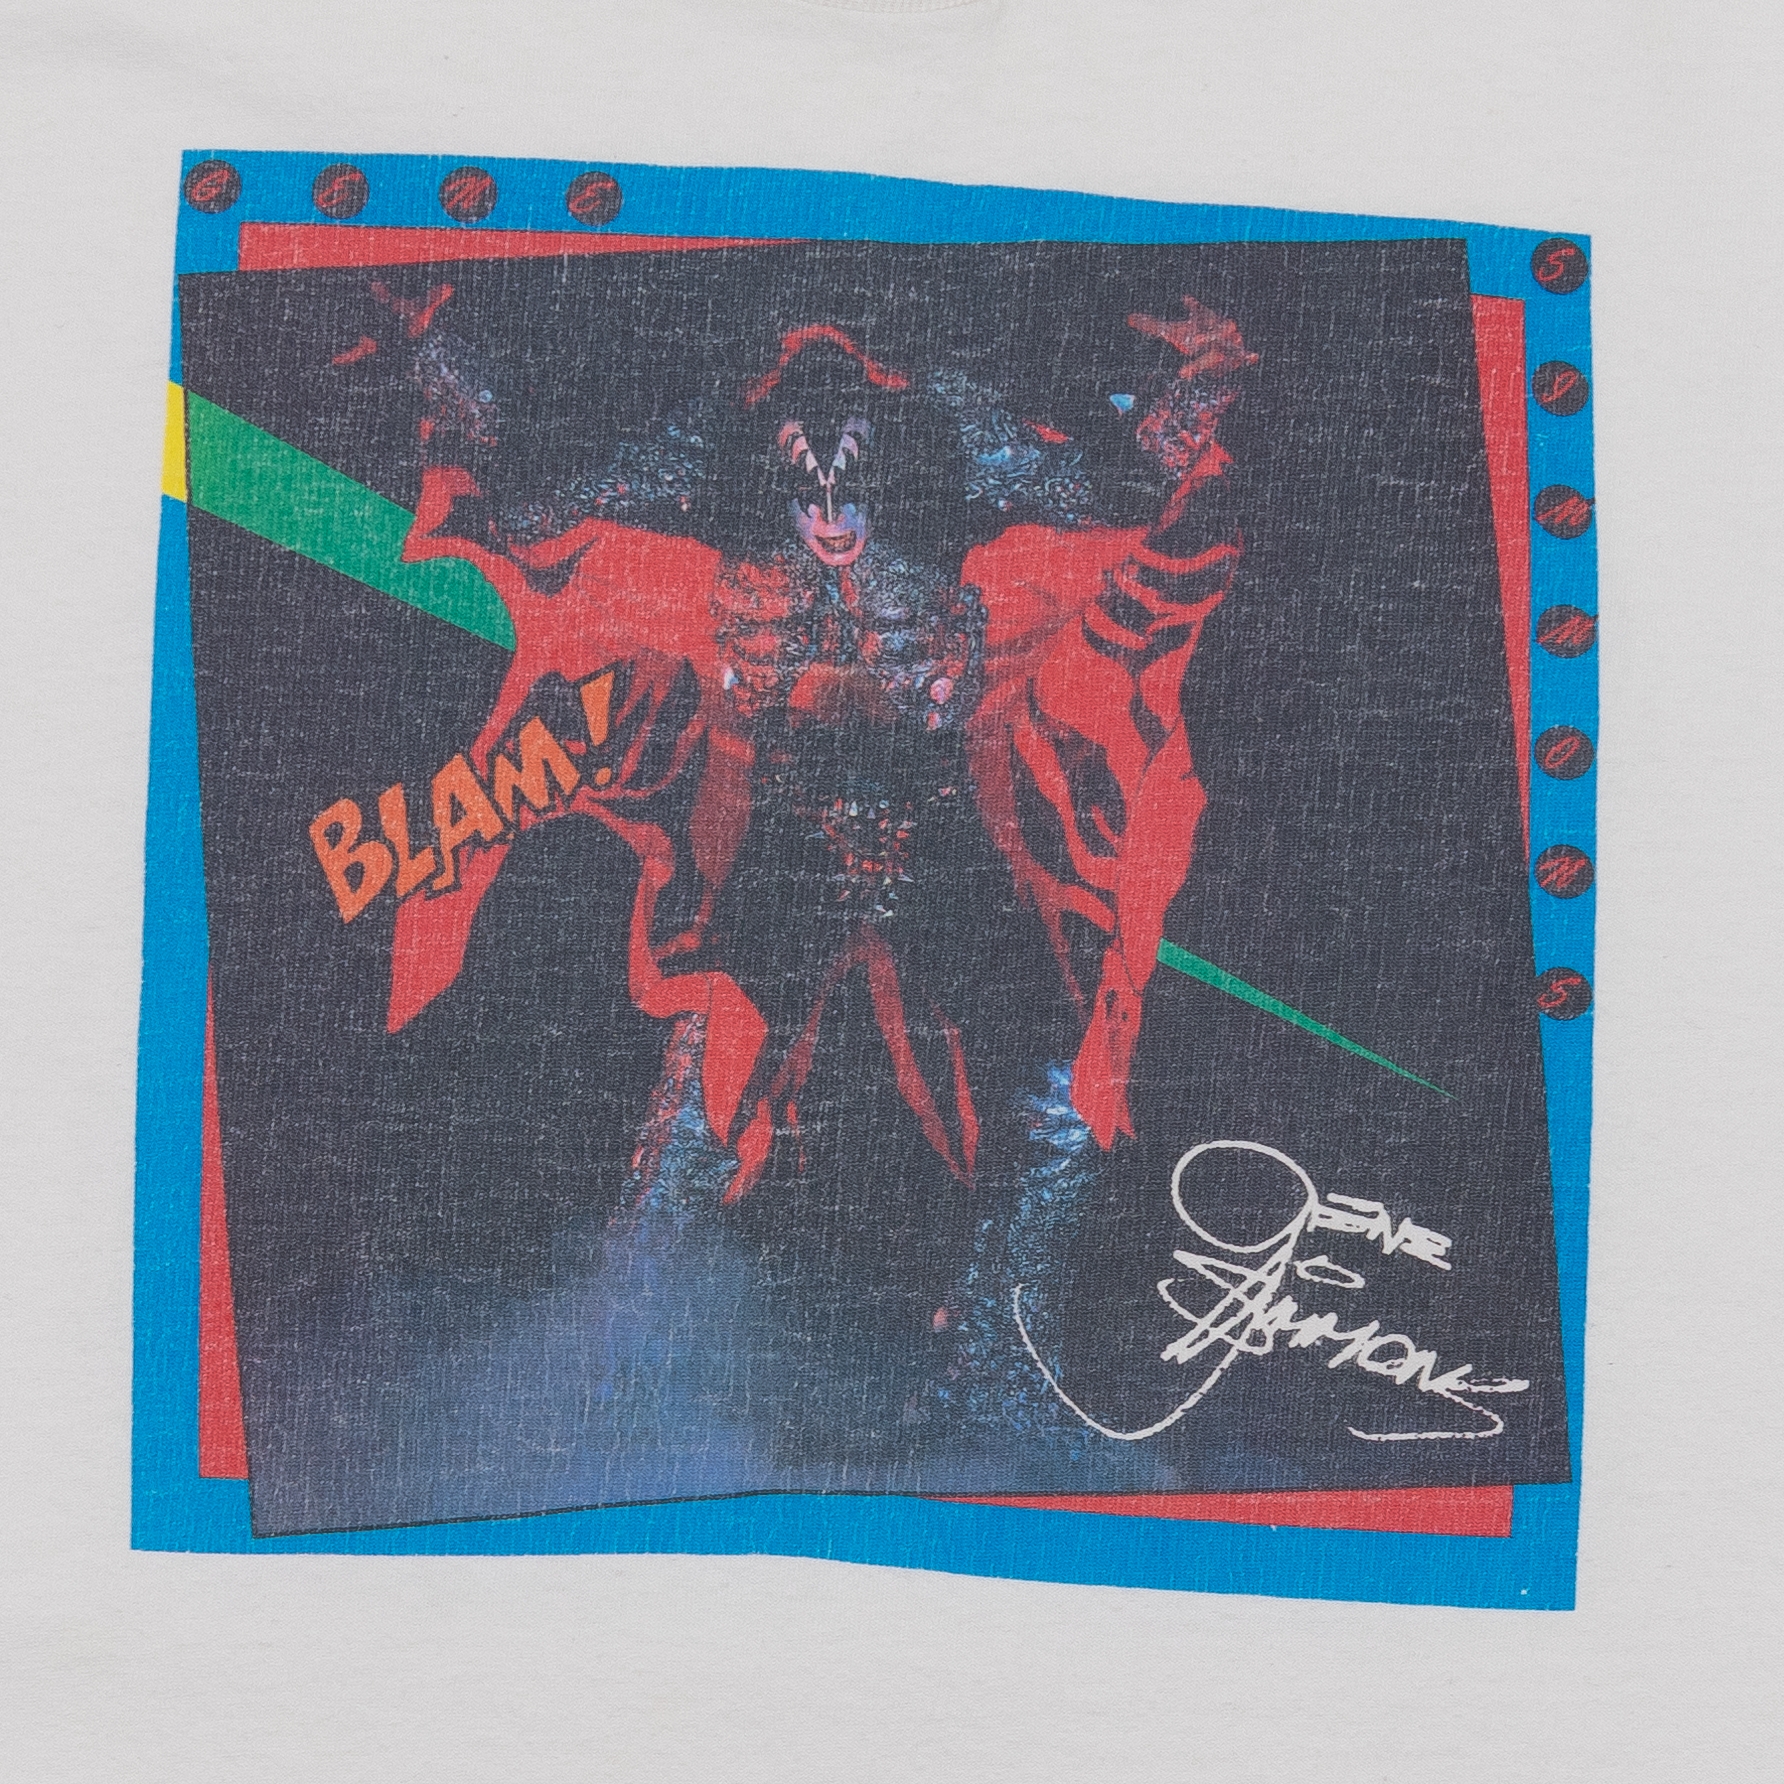 Gene Simmons "Blam!" 90's Tee White-PLUS